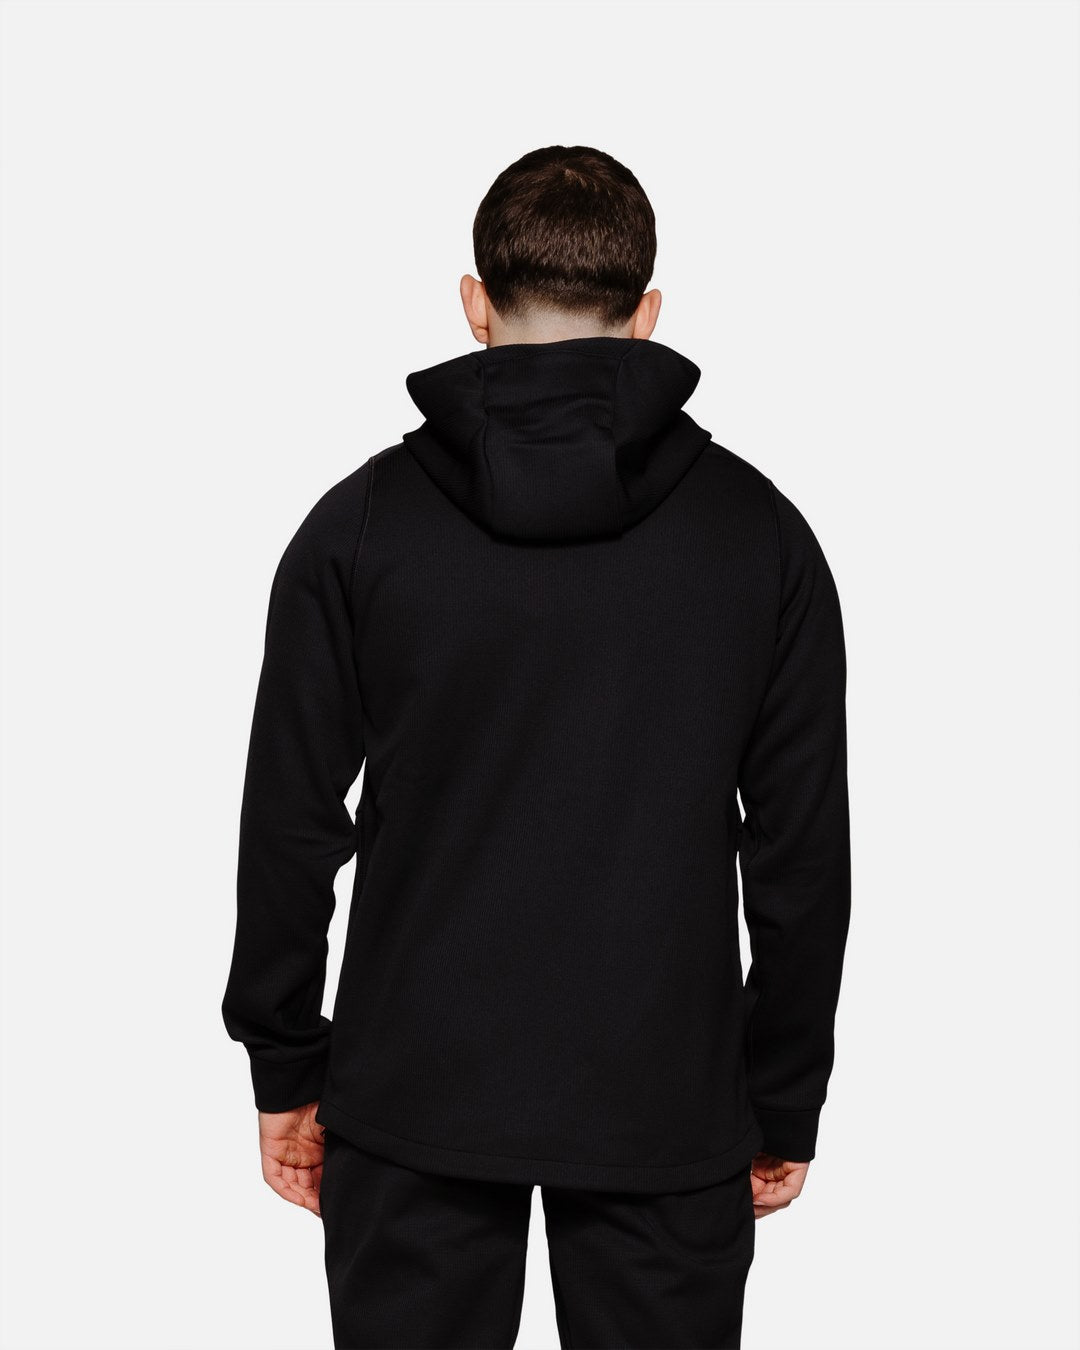 Nike Therma Sphere Hooded Jacket - Black